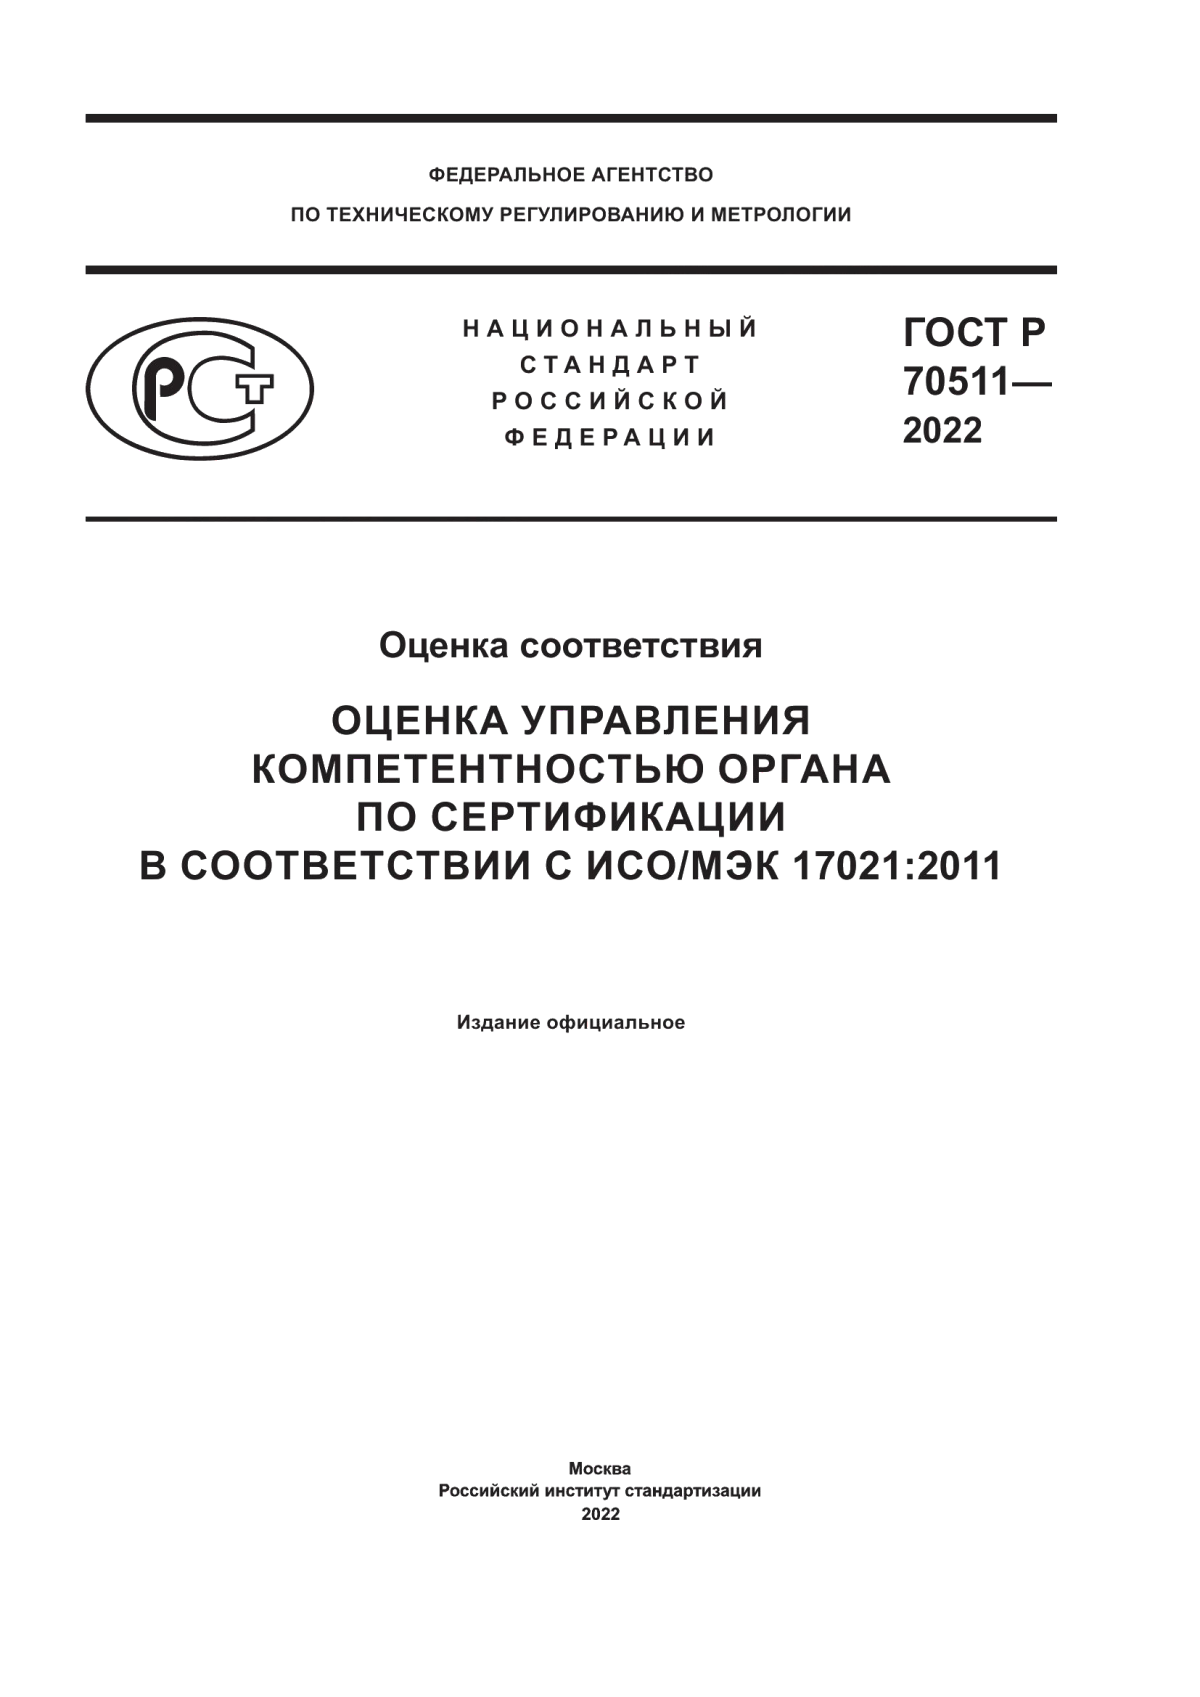 ГОСТ Р 70511-2022 Оценка соответствия. Оценка управления компетентностью органа по сертификации в соответствии с ИСО/МЭК 17021:2011